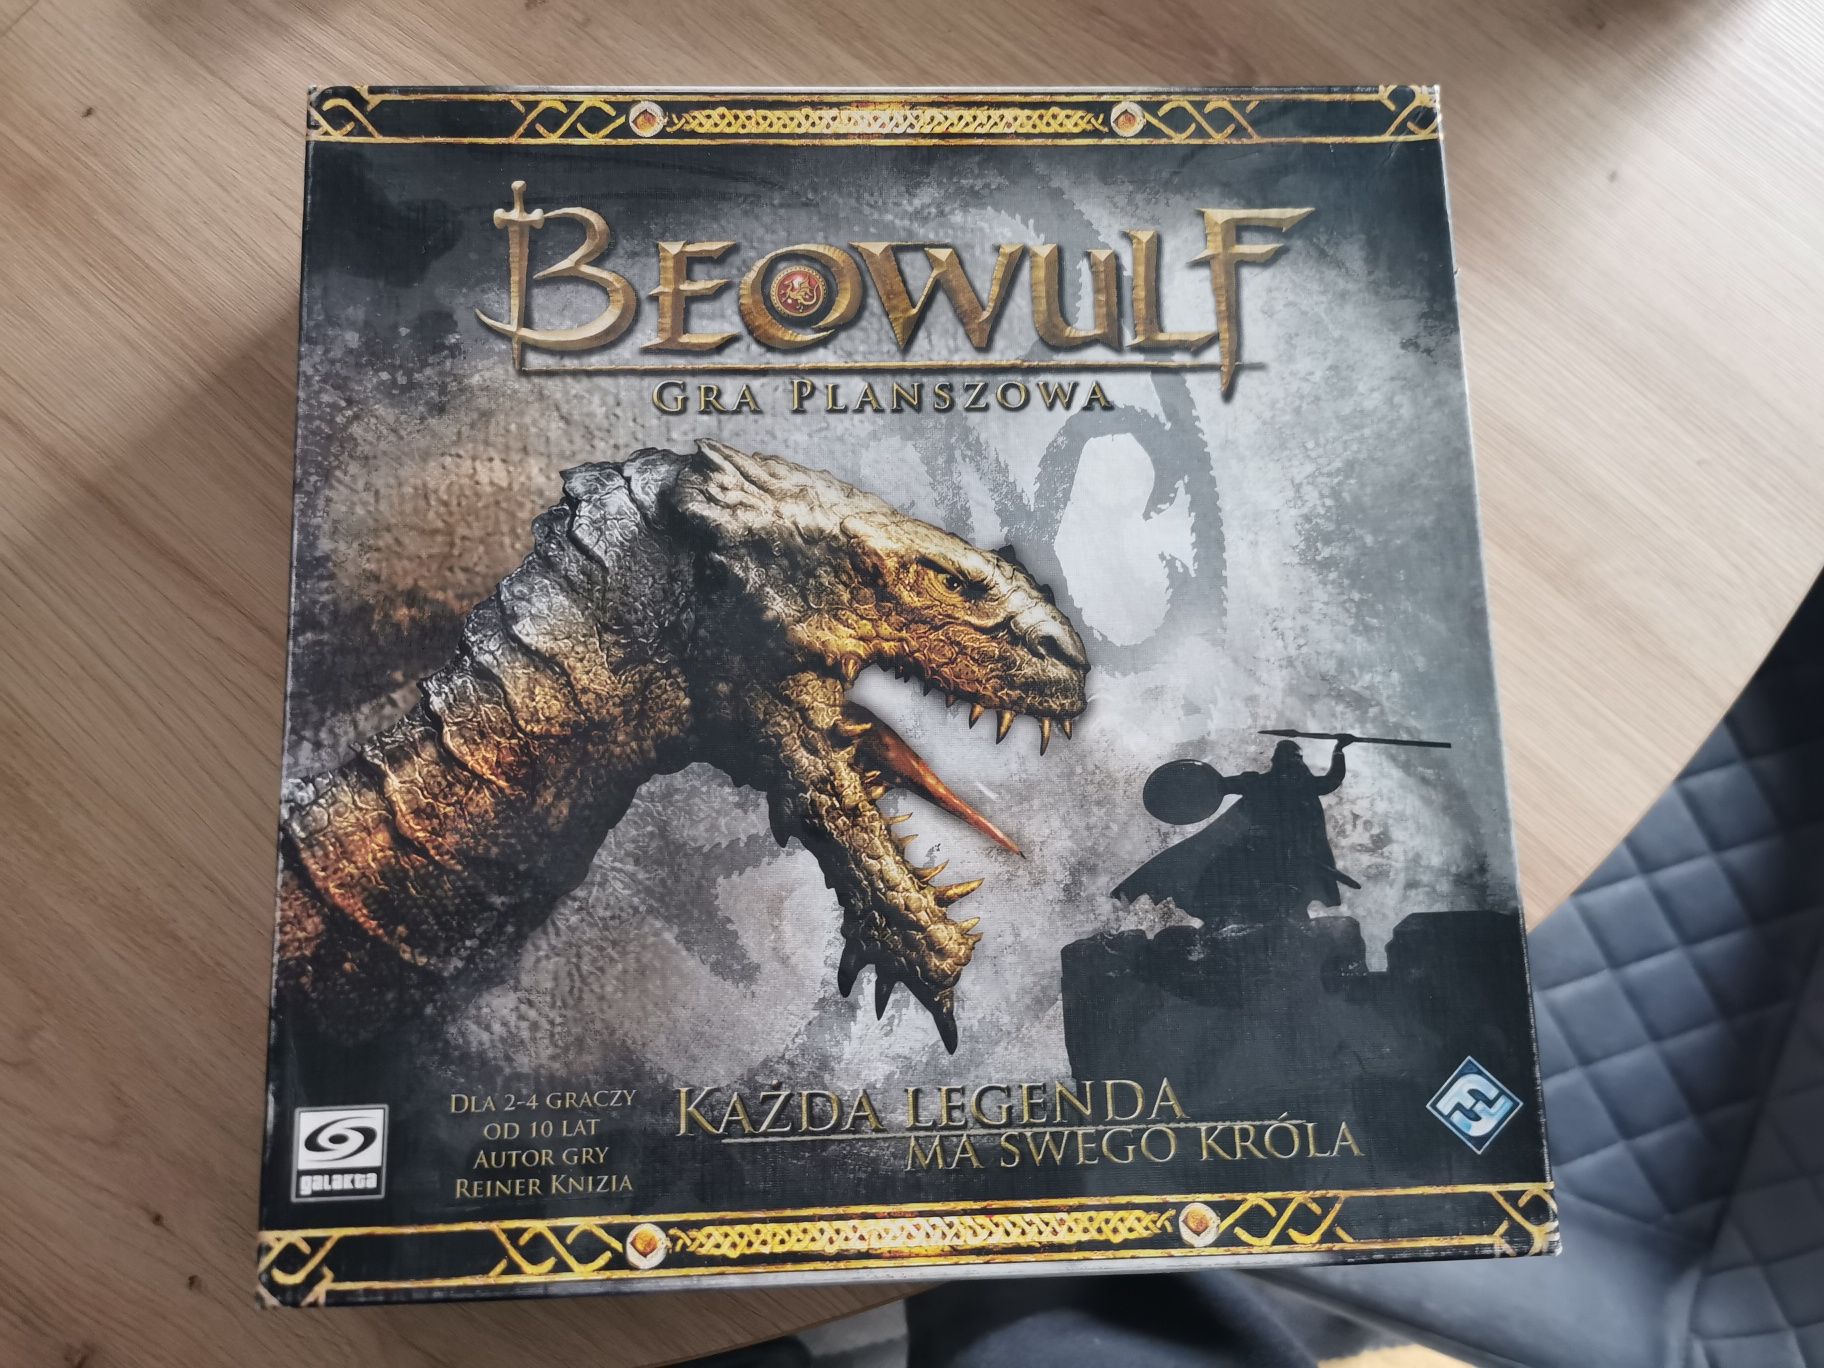 Beowulf - gra planszowa